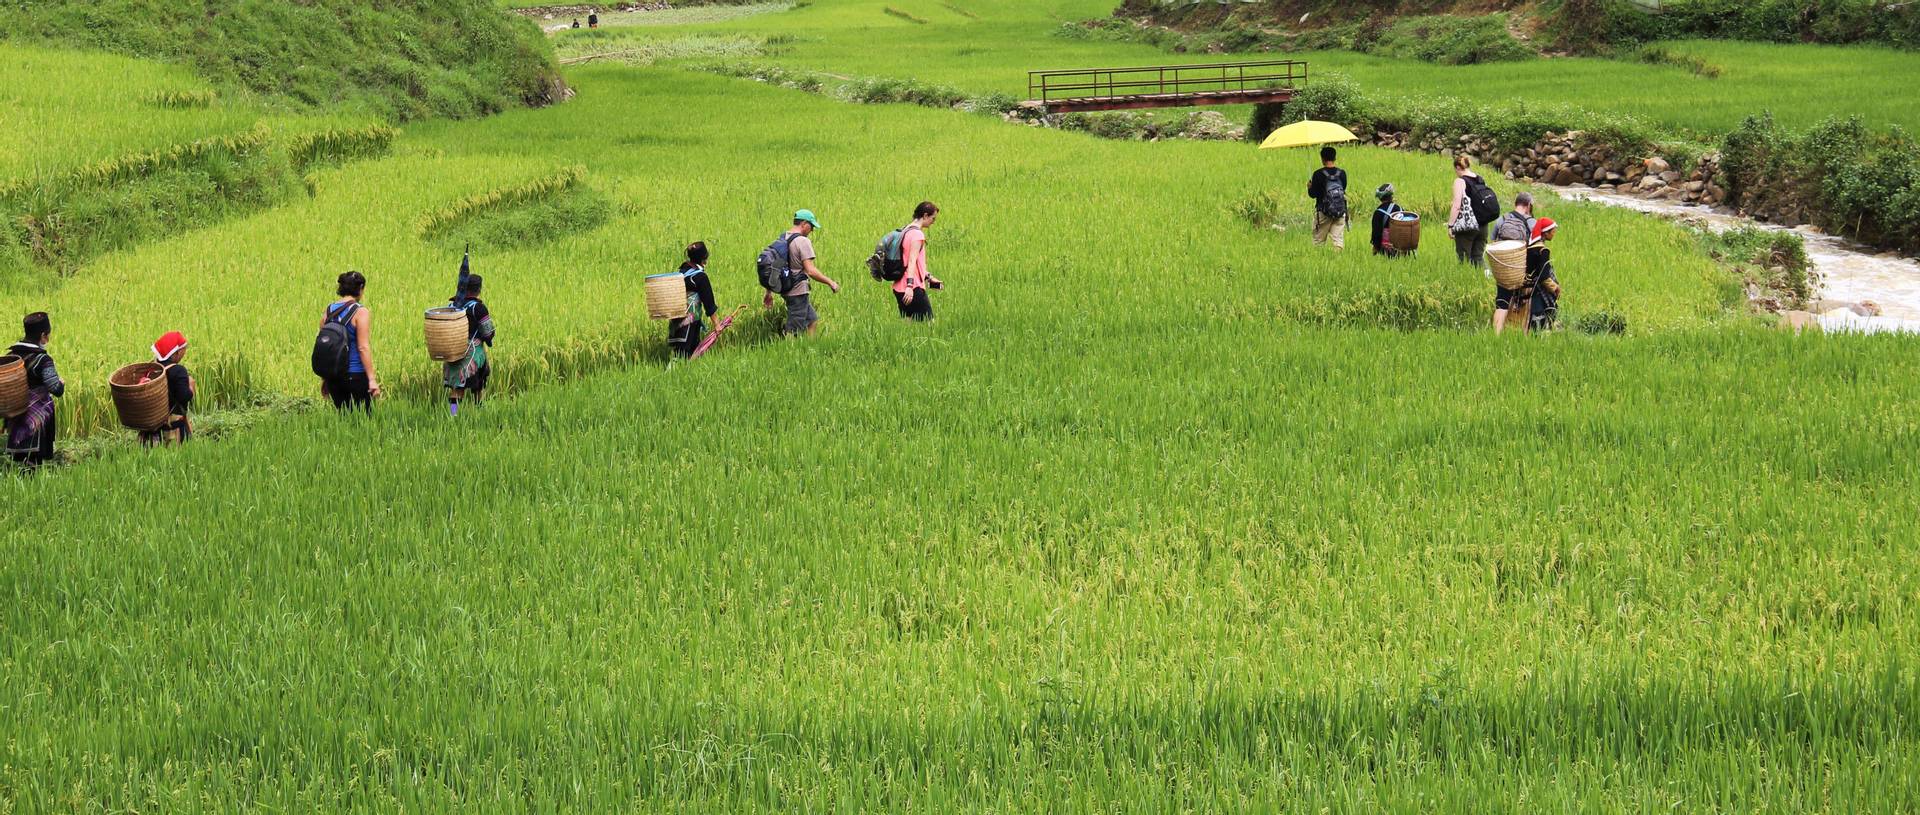 Oasis Overland group walking through Sapa Rice Paddies, Vietnam